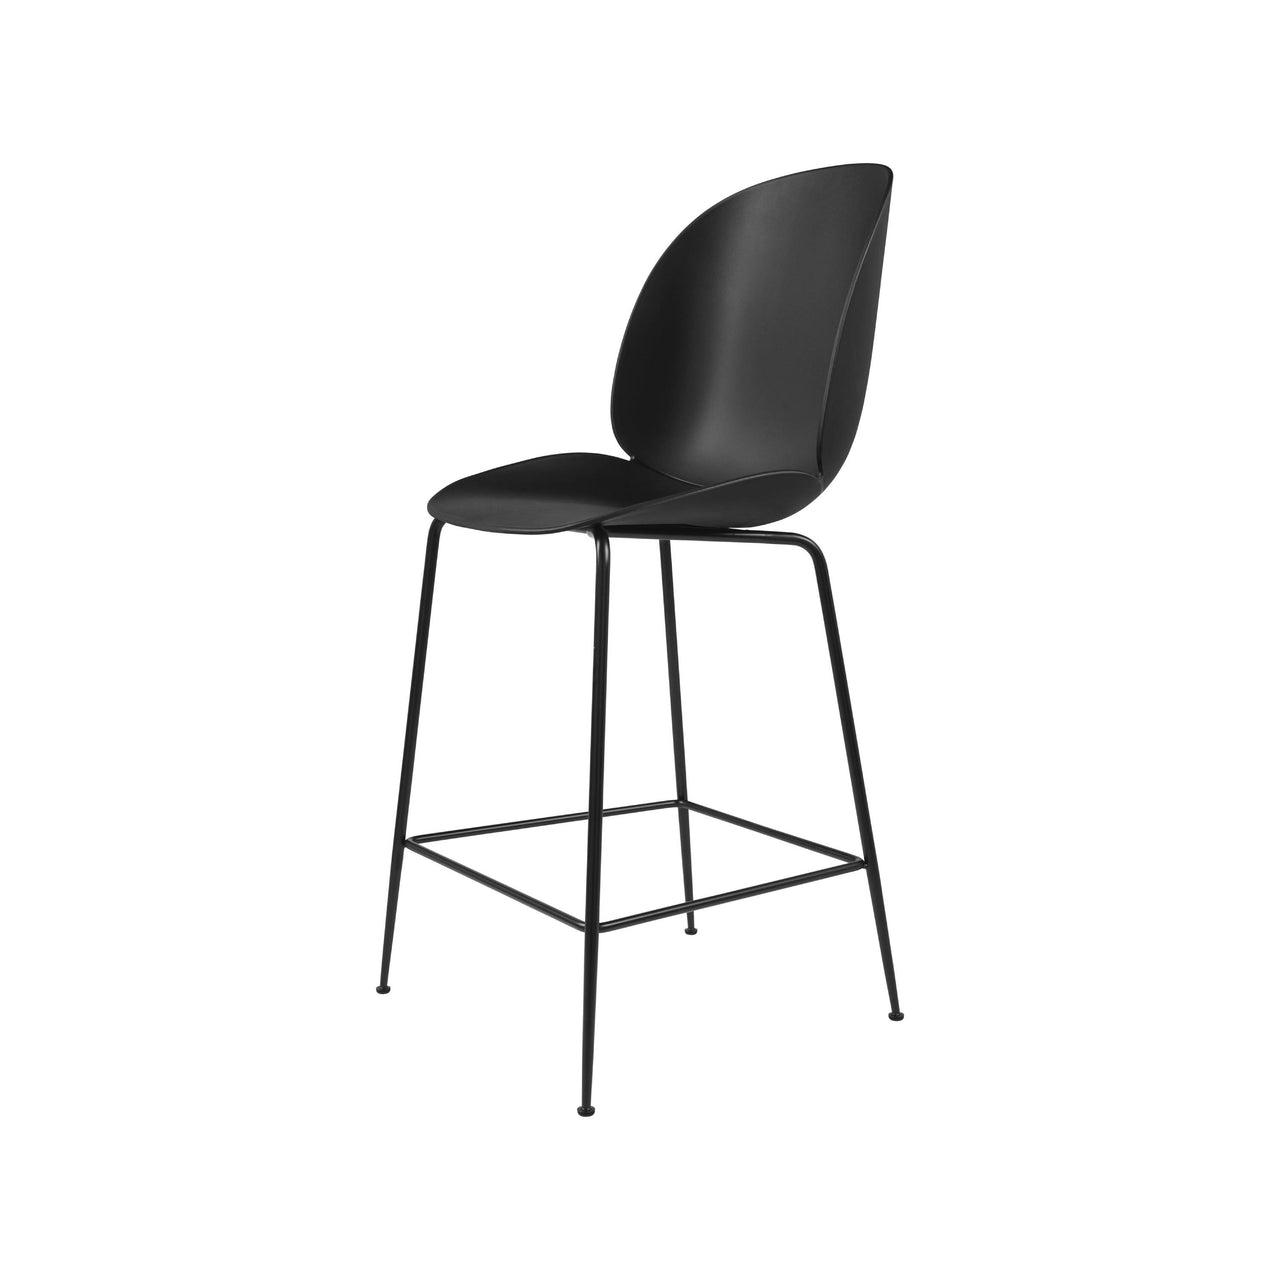 Beetle Bar + Counter Chair: Felt Glides + Counter + Black + Black Matt